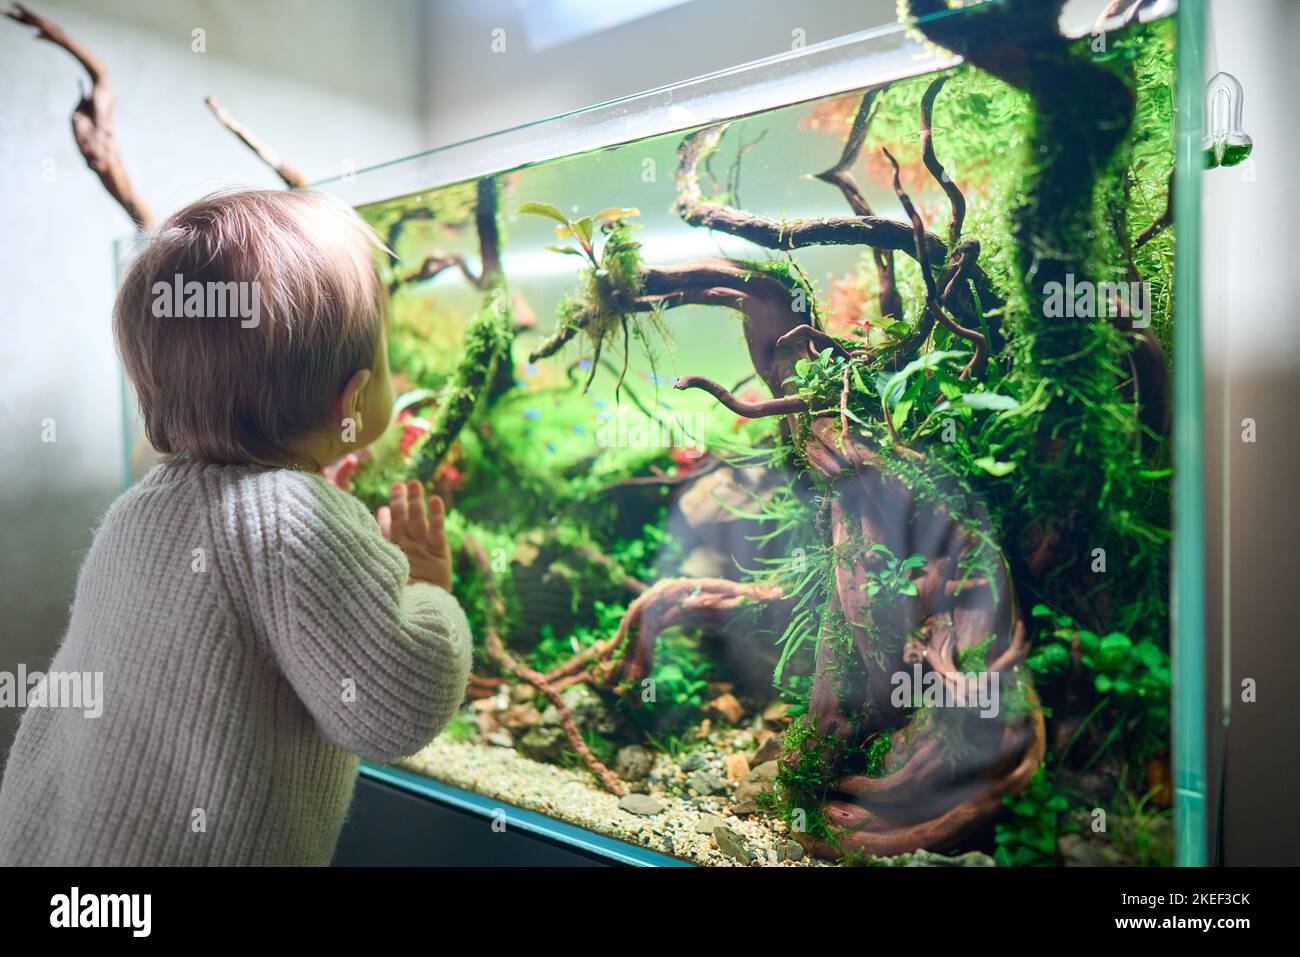 Pietre dell'acquario immagini e fotografie stock ad alta risoluzione - Alamy